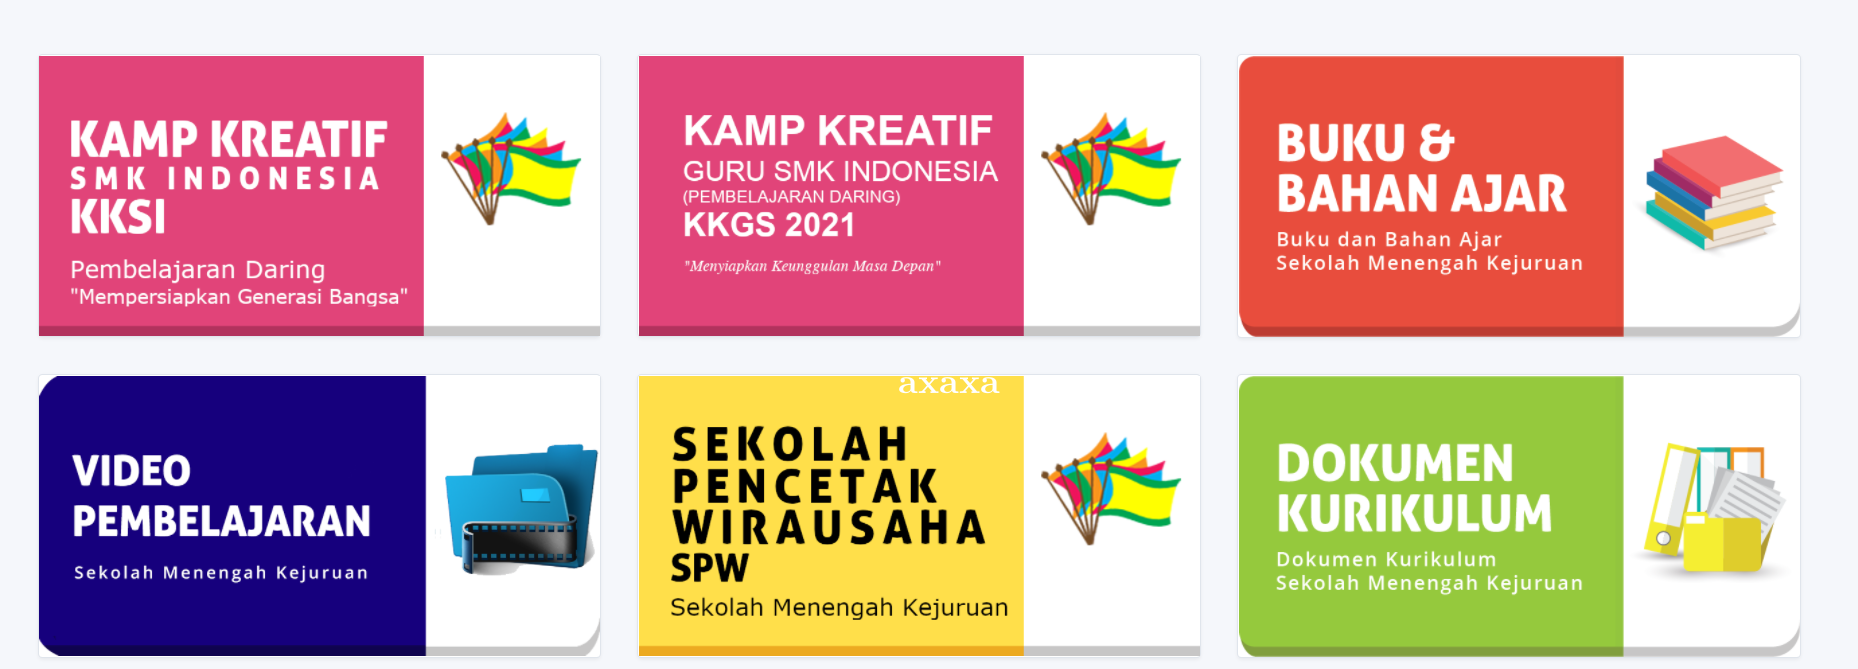 Kamp Kreatif Siswa dan Guru SMK Indonesia 2021 